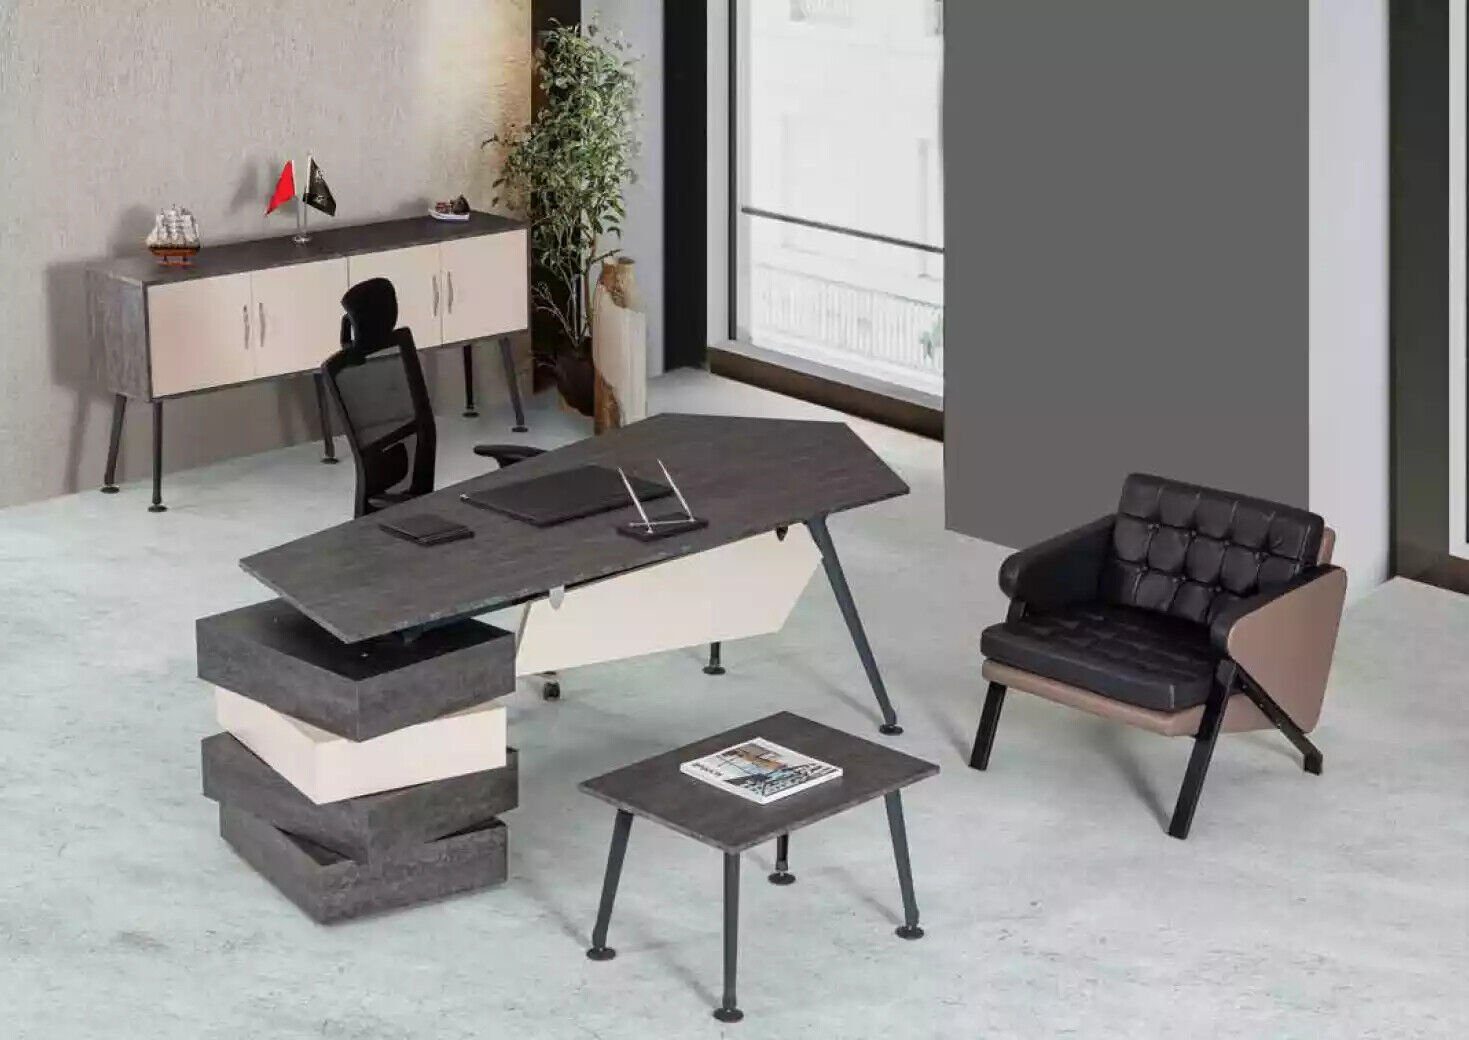 JVmoebel Schreibtisch Möbel Tische Schreibtisch In Europe Tisch Büro Made Holz Arbeitszimmer Einrichtung